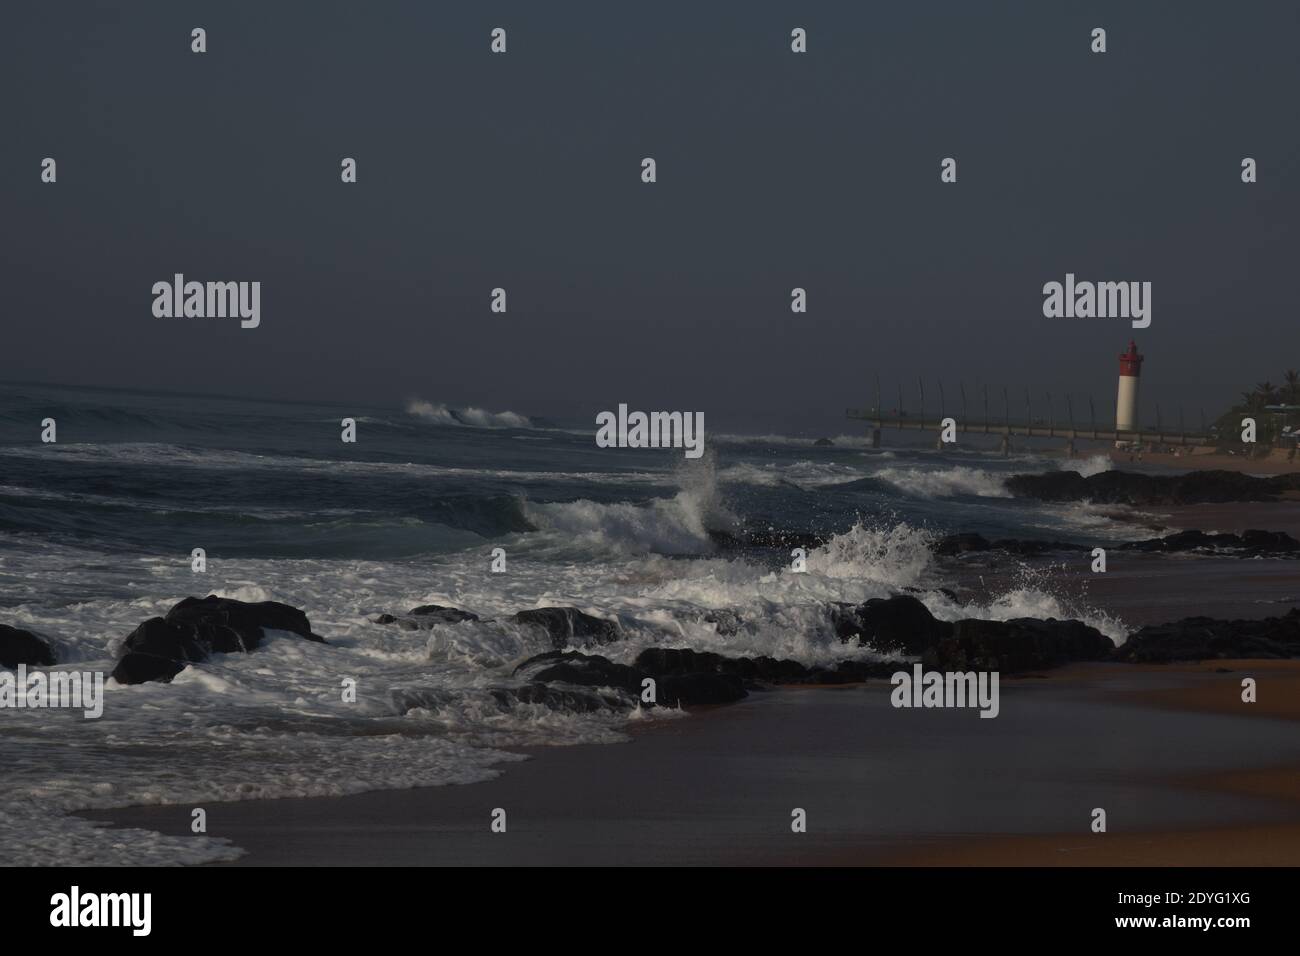 La mattina presto sulla spiaggia, le onde si schiantano contro le rocce con il molo e il faro sullo sfondo Foto Stock